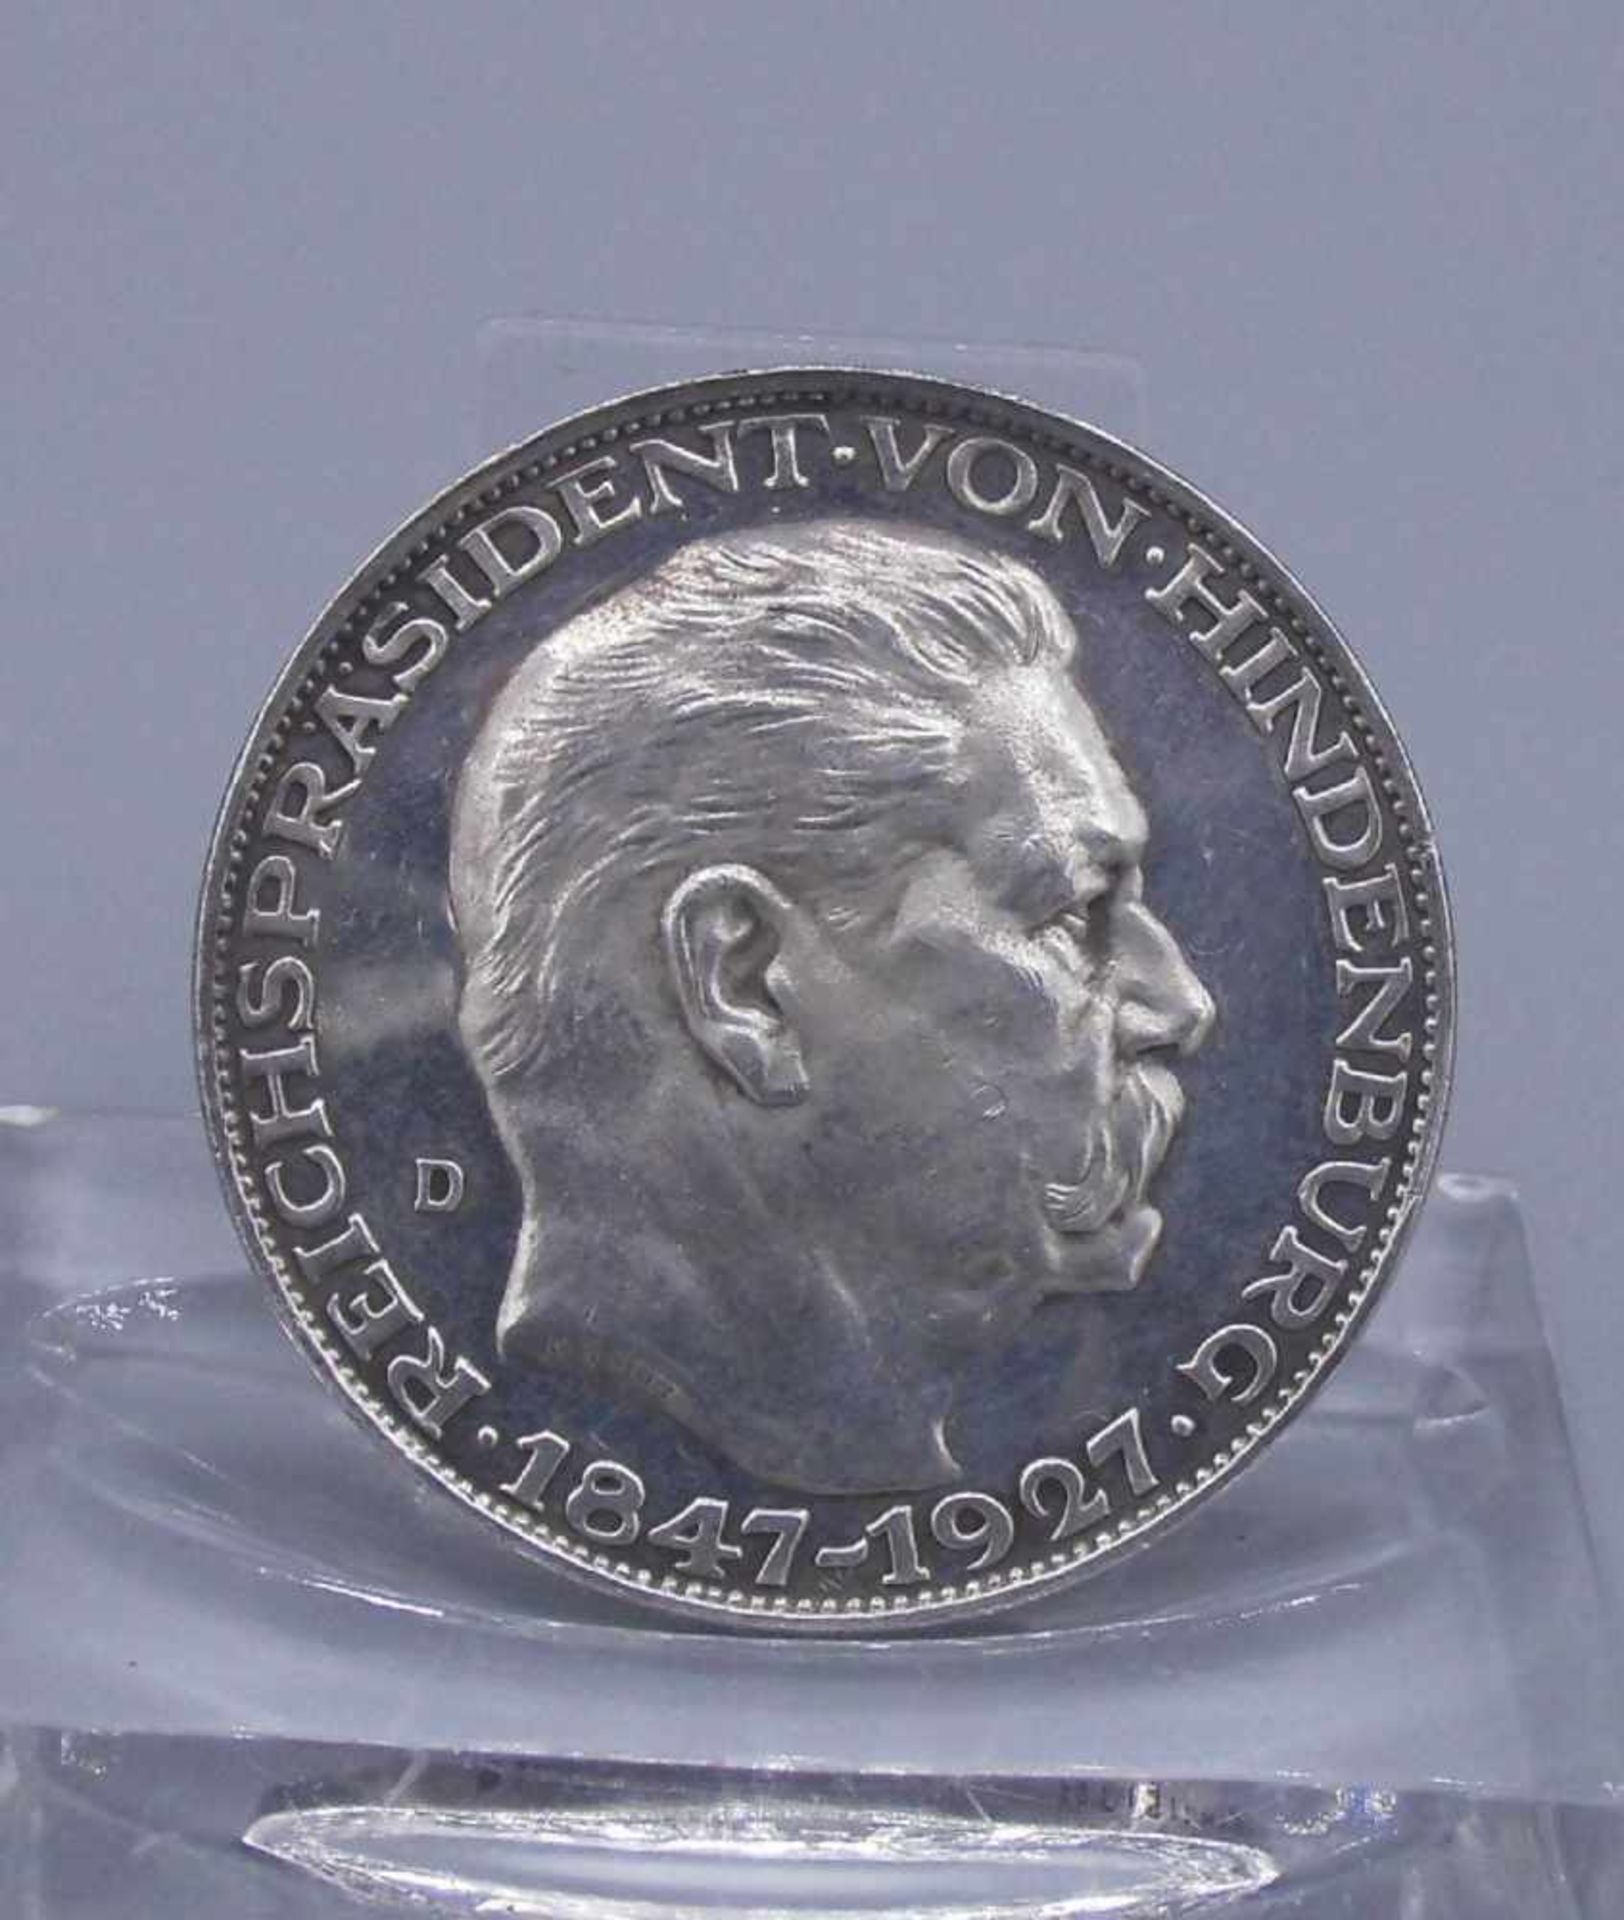 SILBER-MEDAILLE / GEDENKMÜNZE: "von Hindenburg" / silver coin, 1927, 900er Silber; avers: Porträt